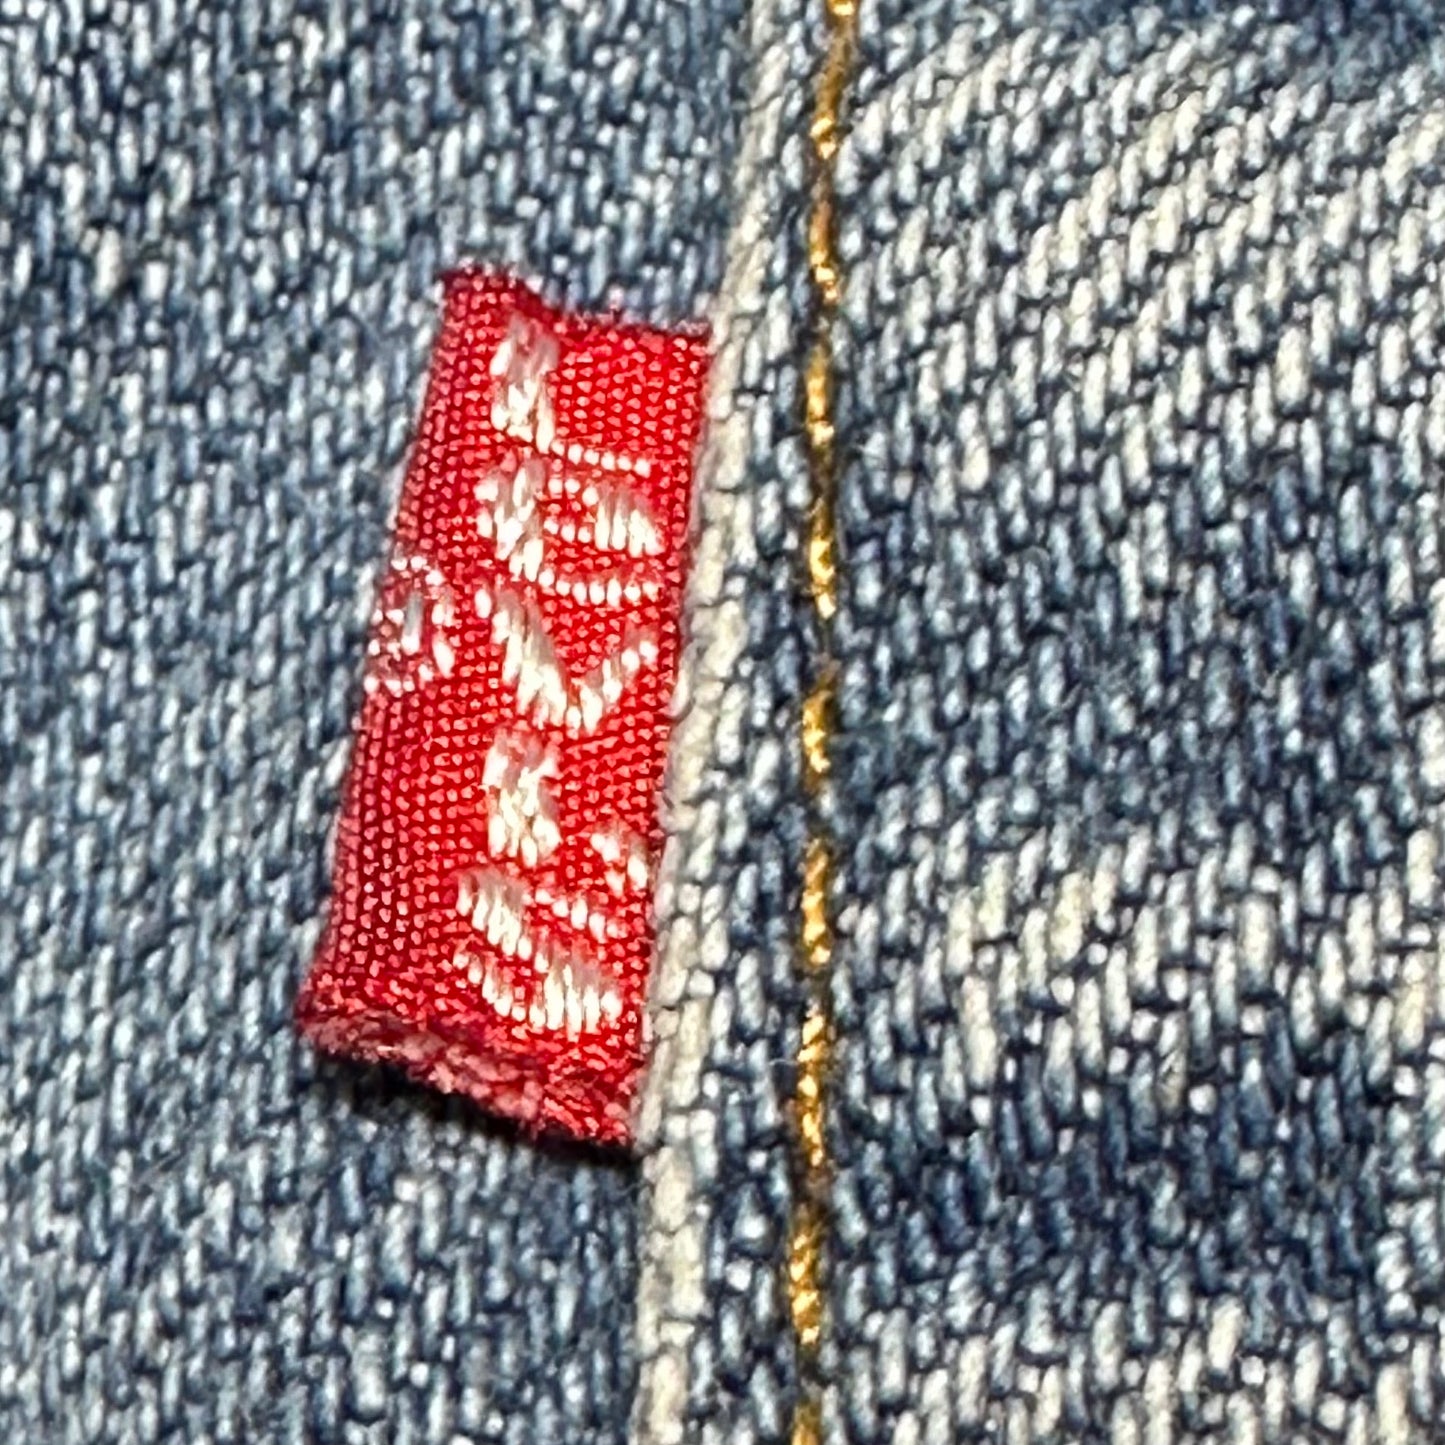 1980s Women’s Levi’s 505 Blue Jeans, Size XS, 25"x30.25", 18505-0214